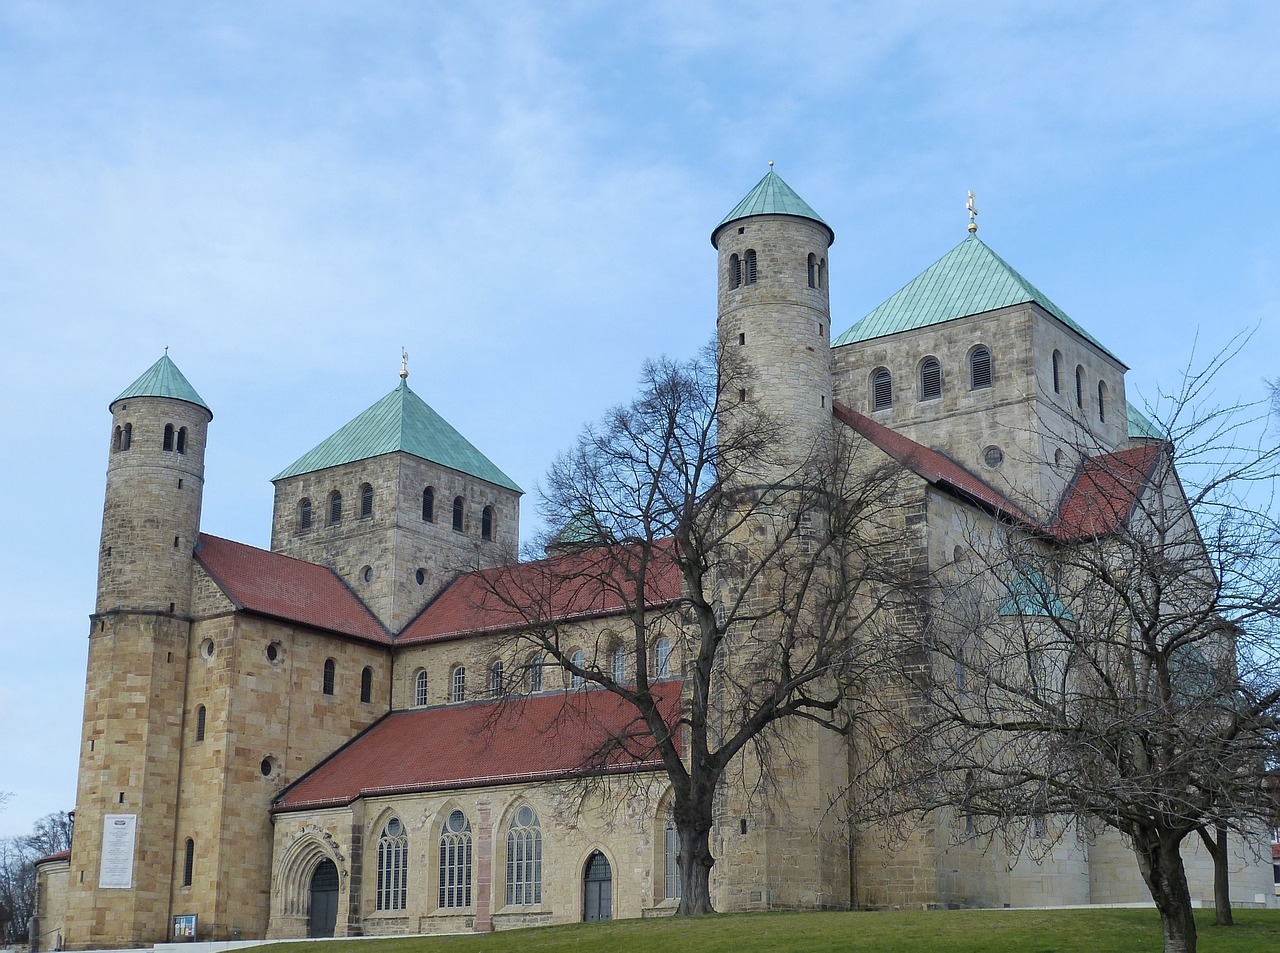 Hildesheimo Vokietija, Žemutinė Saksonija, Bažnyčia, Istoriškai, Senamiestis, Architektūra, Bokštas, Romanesque, St Michaelis, Unesco